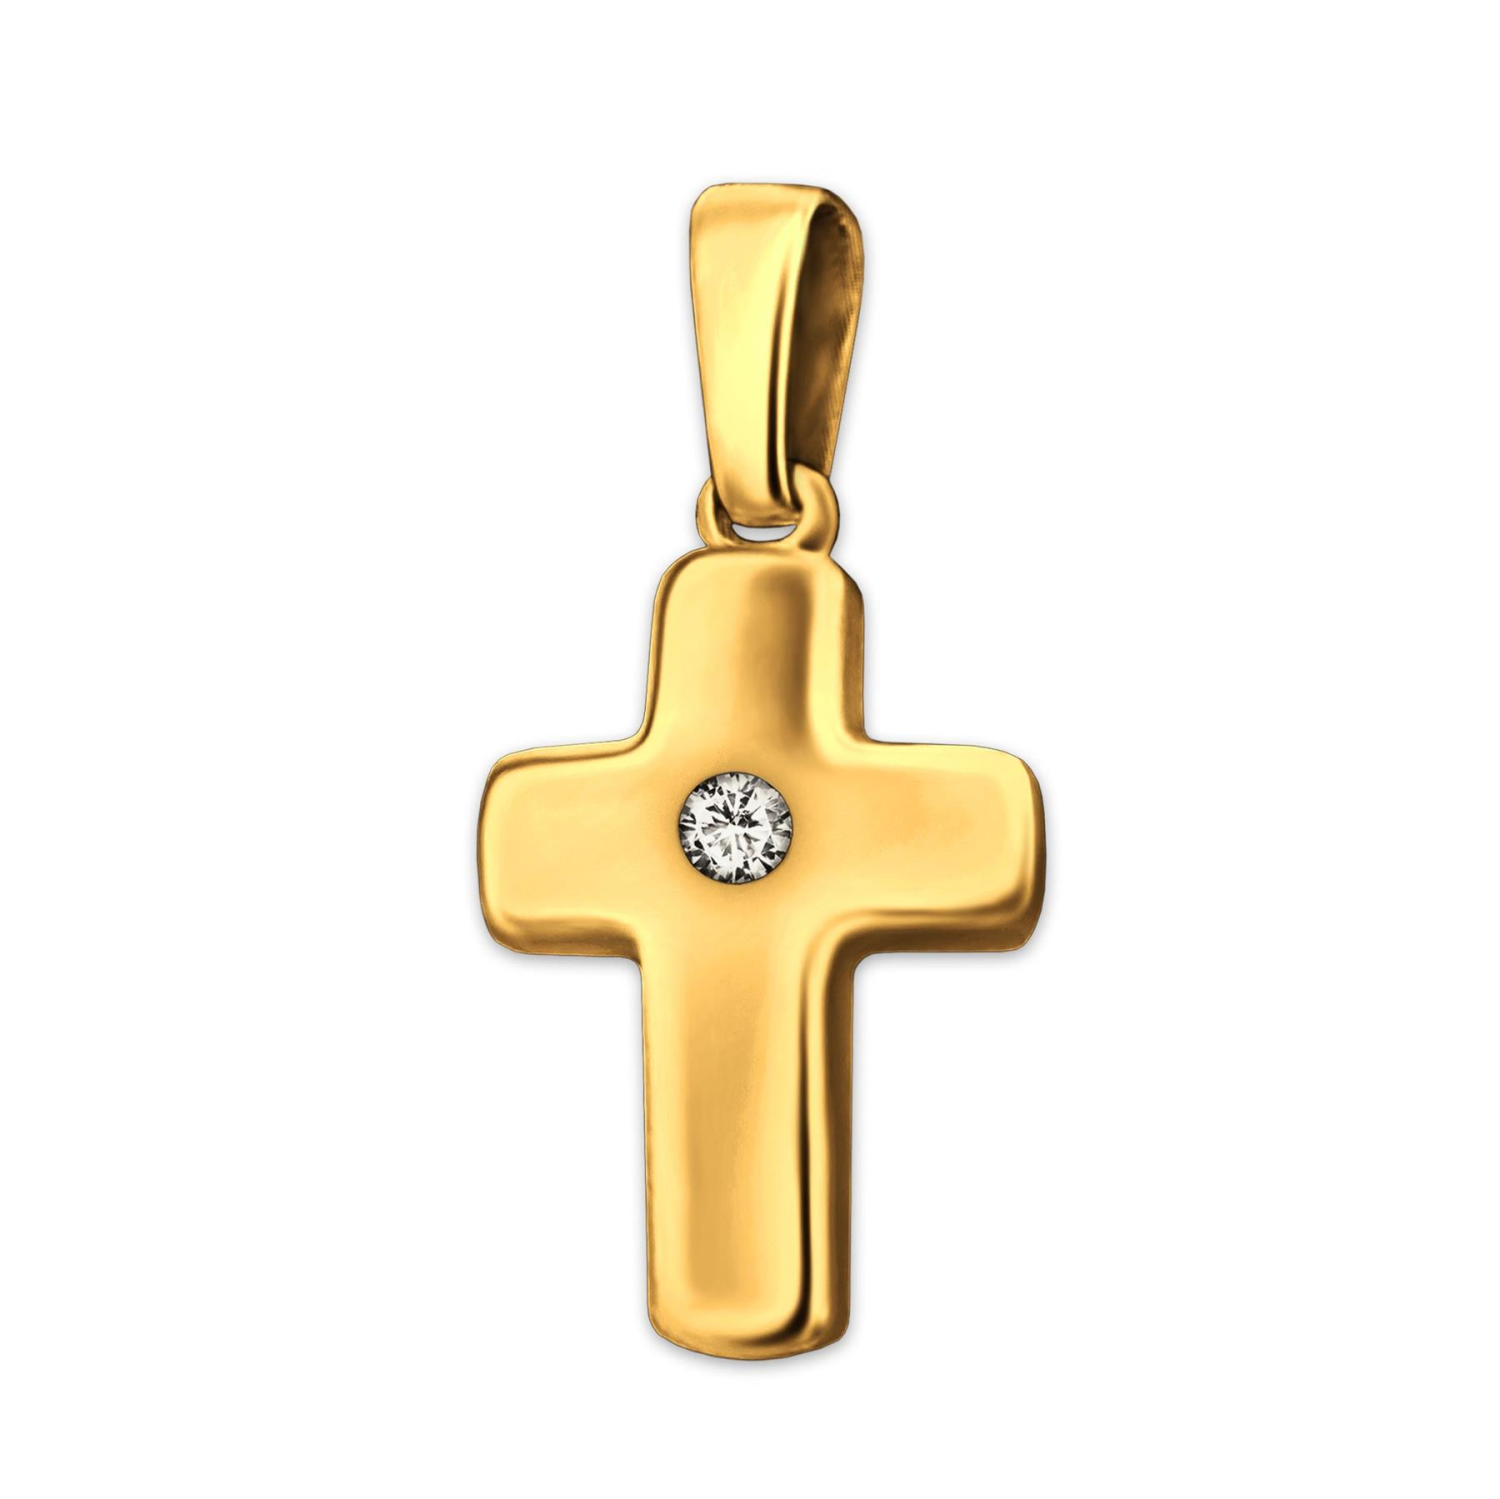 Goldenes Kreuz 12 mm glänzend poliert leicht gewölbt mit Zirkonia 333 GOLD 8 KARAT